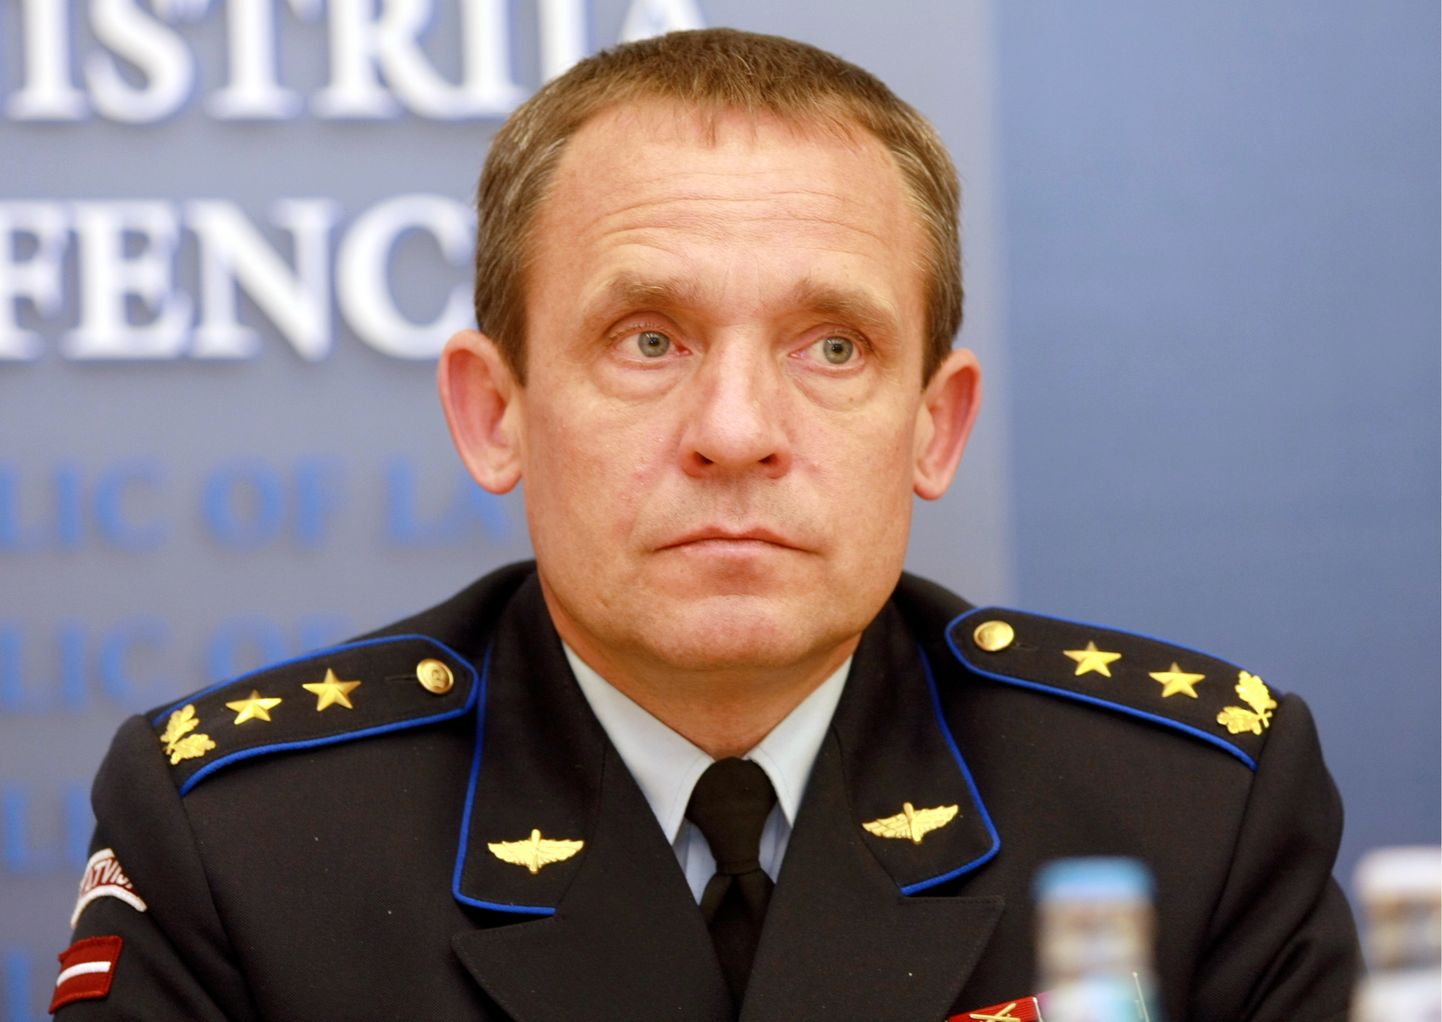 Nacionālo bruņoto spēku komandieris ģenerālmajors Juris Maklakovs piedalās preses konferencē par starptautiskajām jūras spēku mācībām "Baltops''. 2010.g.